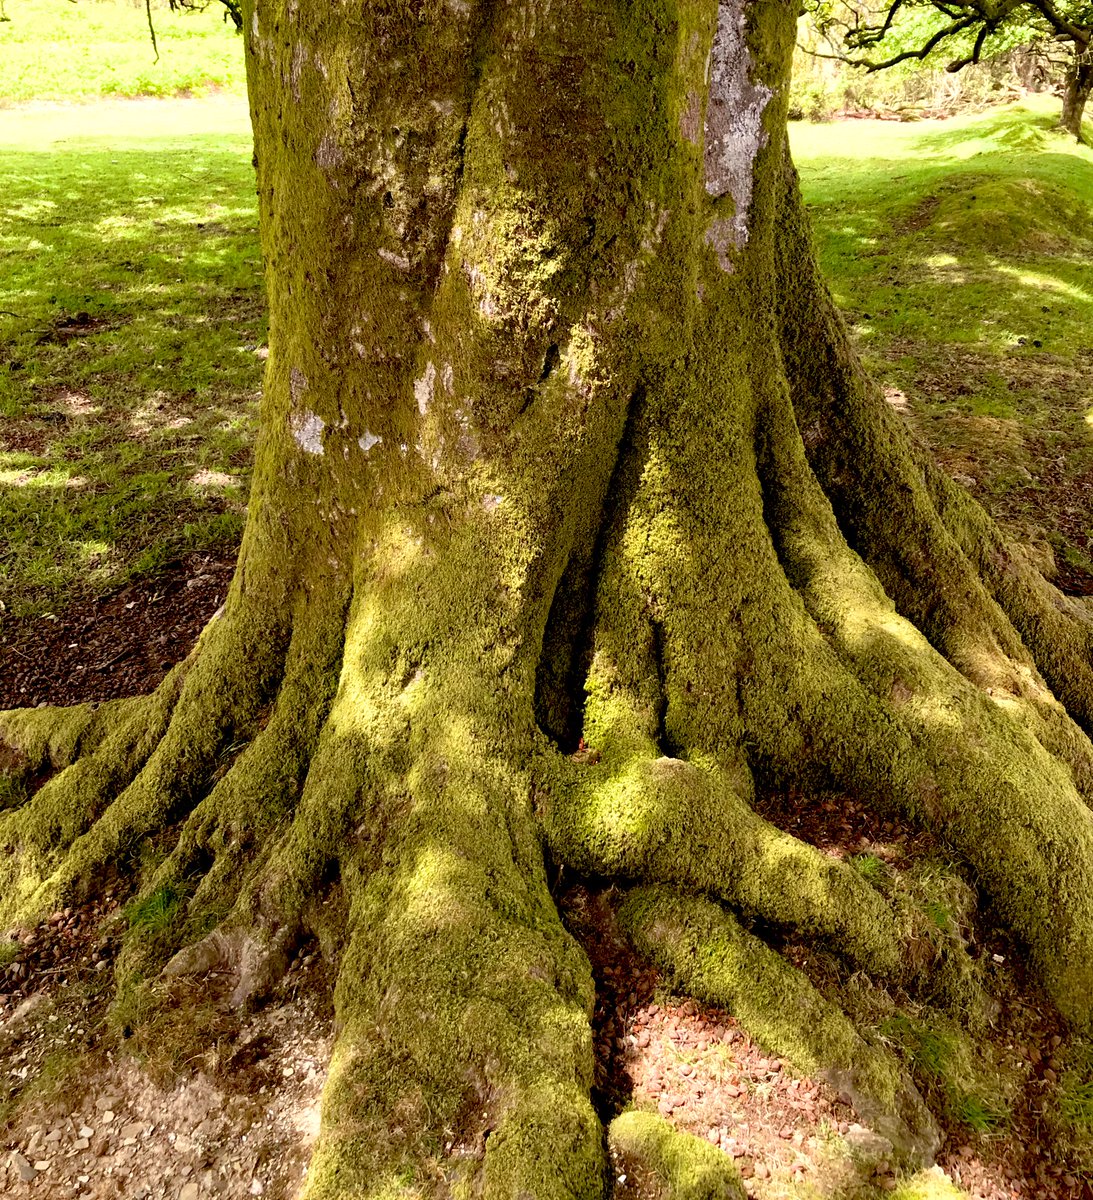 Treehugging again 😊#treestreestrees #beechtree @WoodlandTrust #biodiversity #Dartmoor